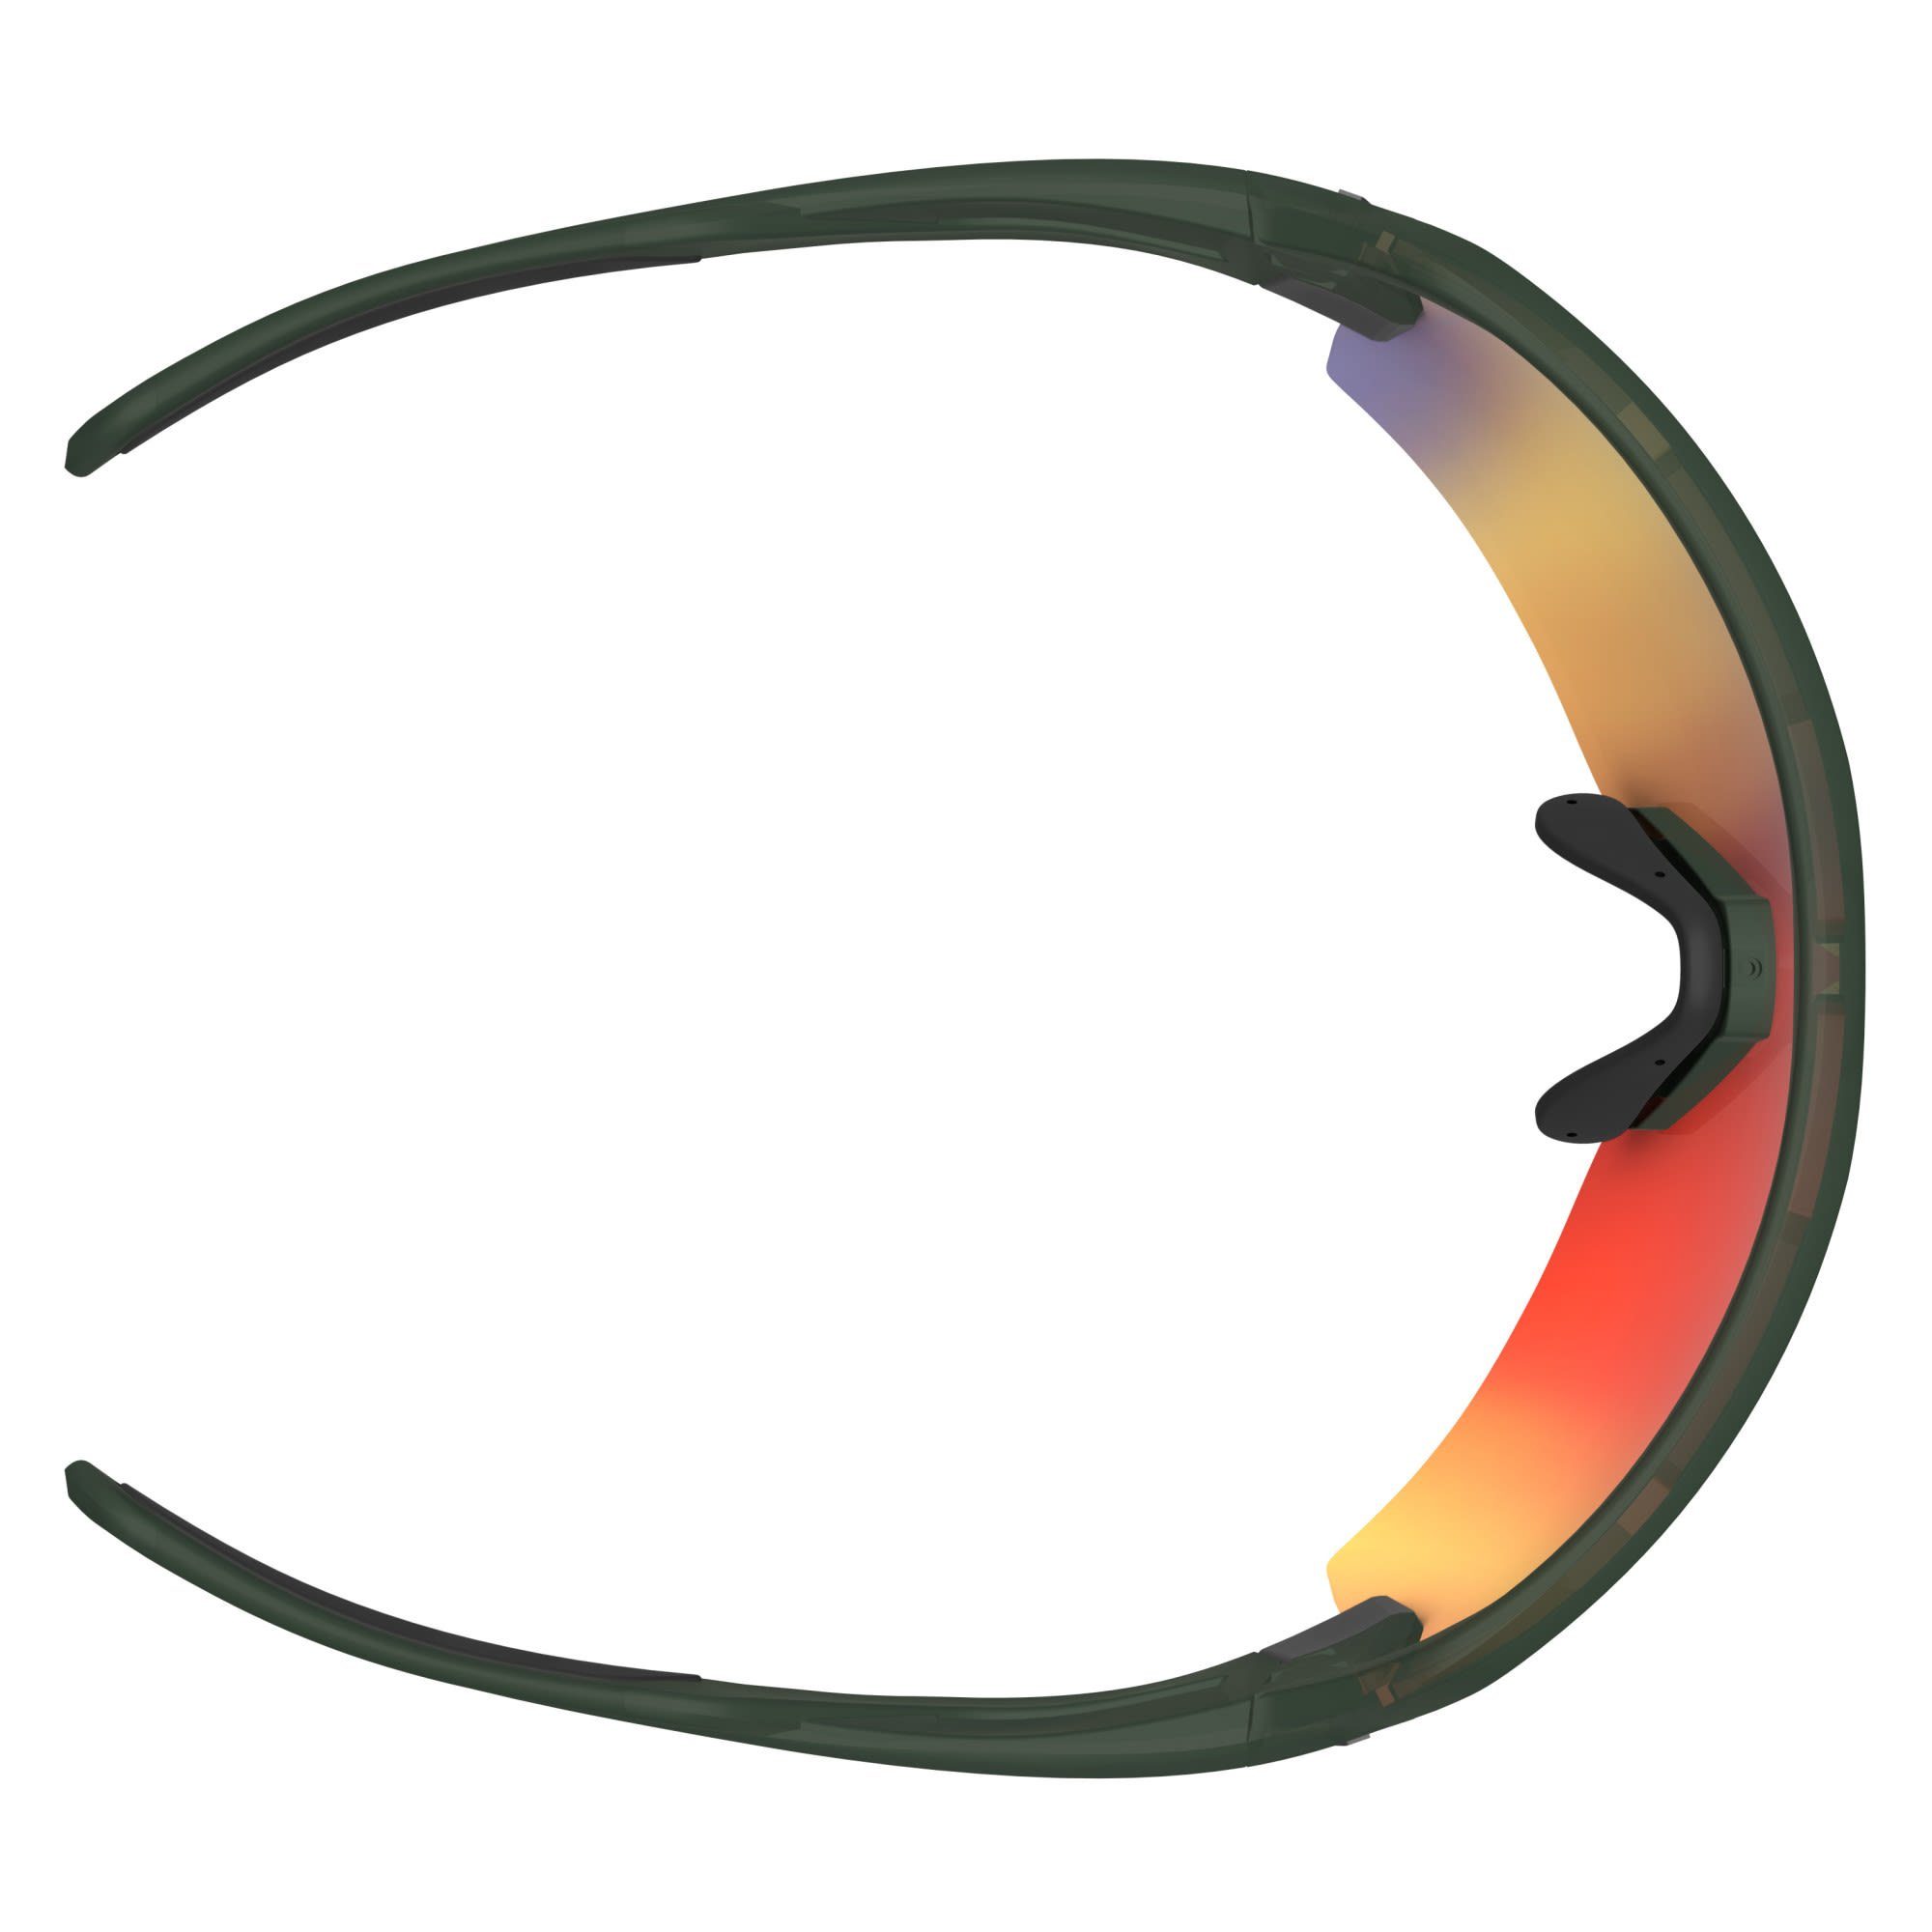 Scott Scott Sunglasses - Chrome Green Enhancer Fahrradbrille Spur Accessoires Clear - Red Khaki